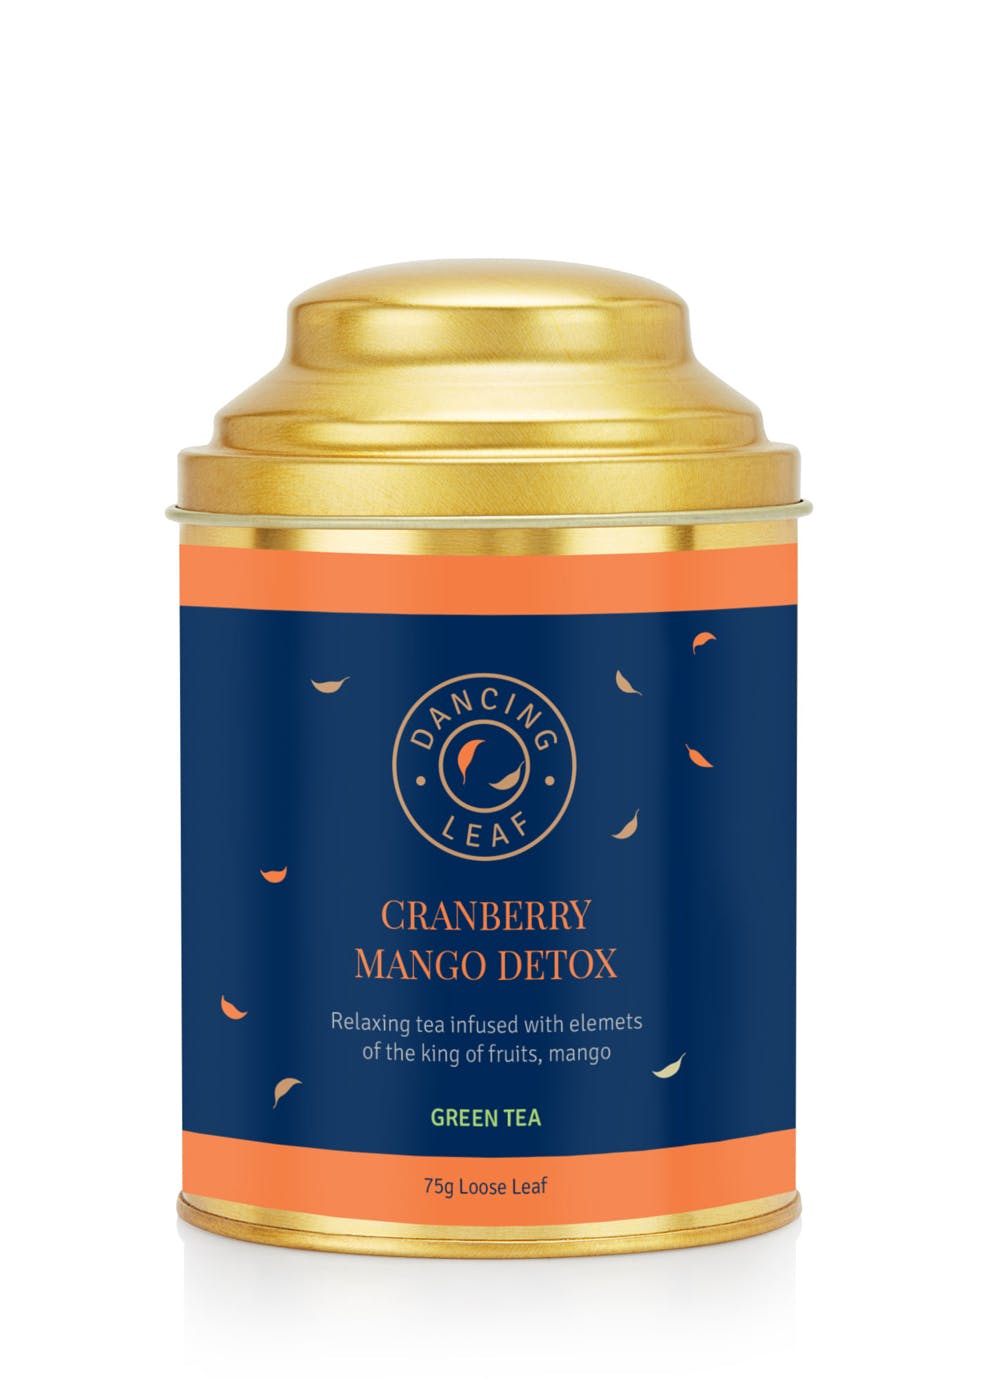 Cranberry Mango Detox Green Tea